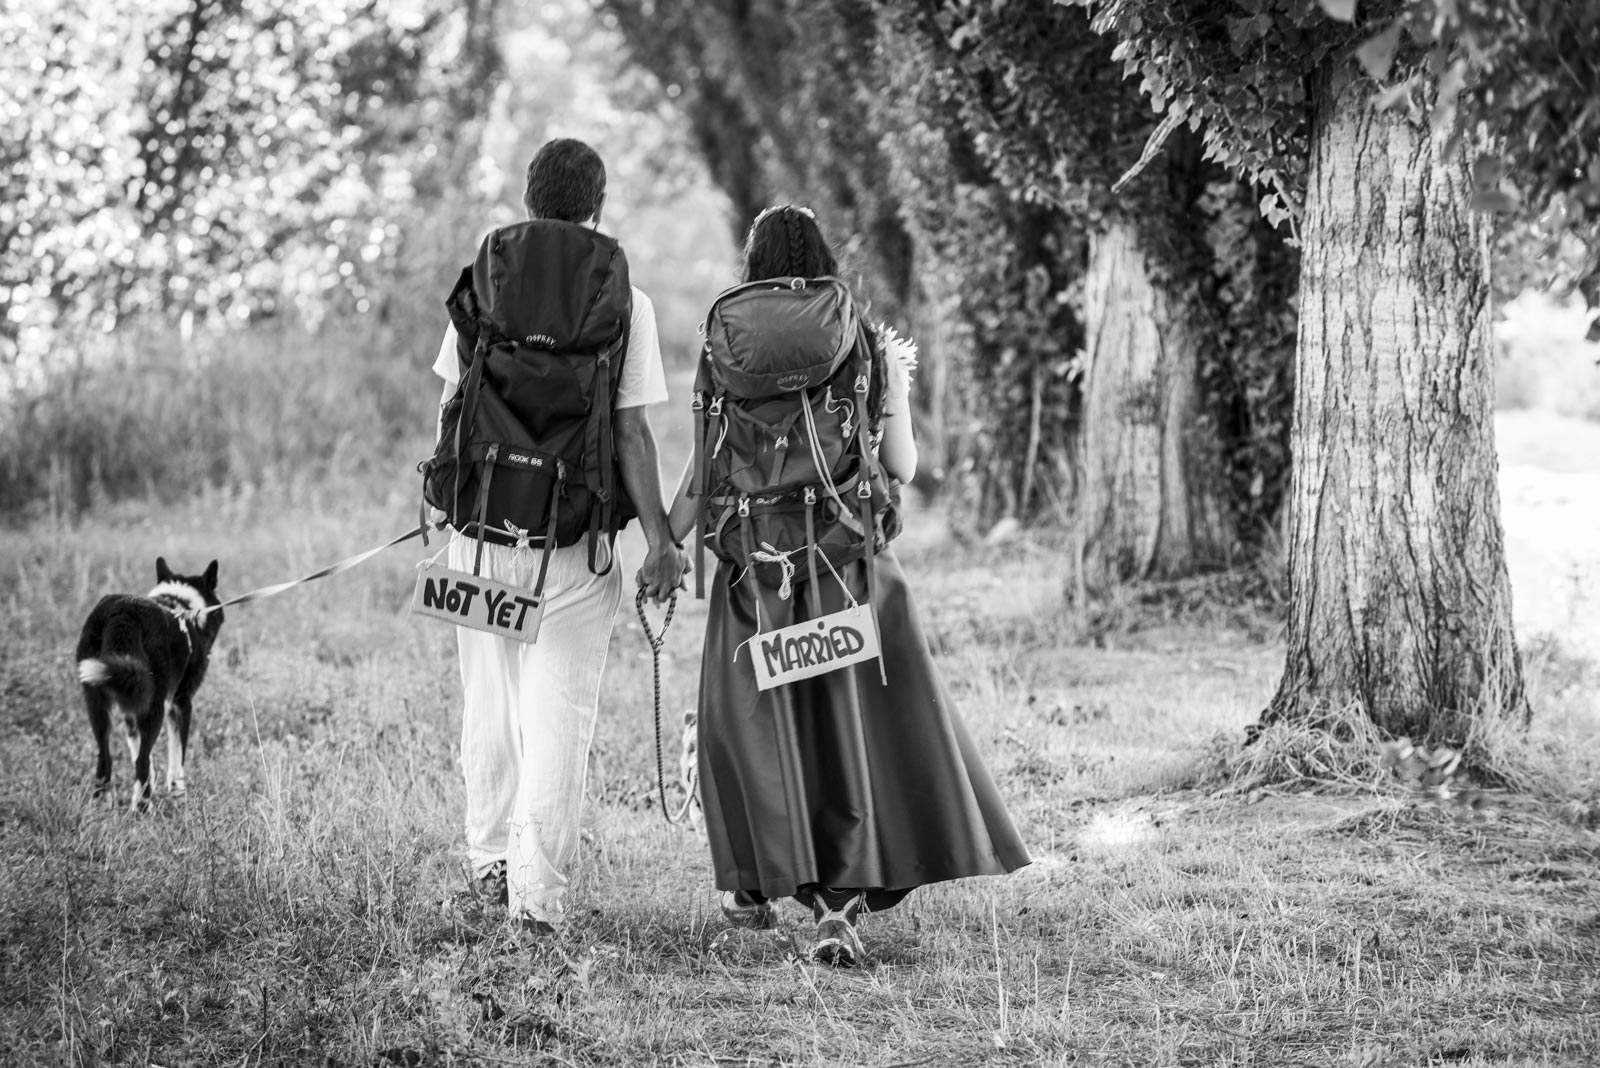 Servizio fotografico prematrimoniale a Todi, a spasso con gli sposi